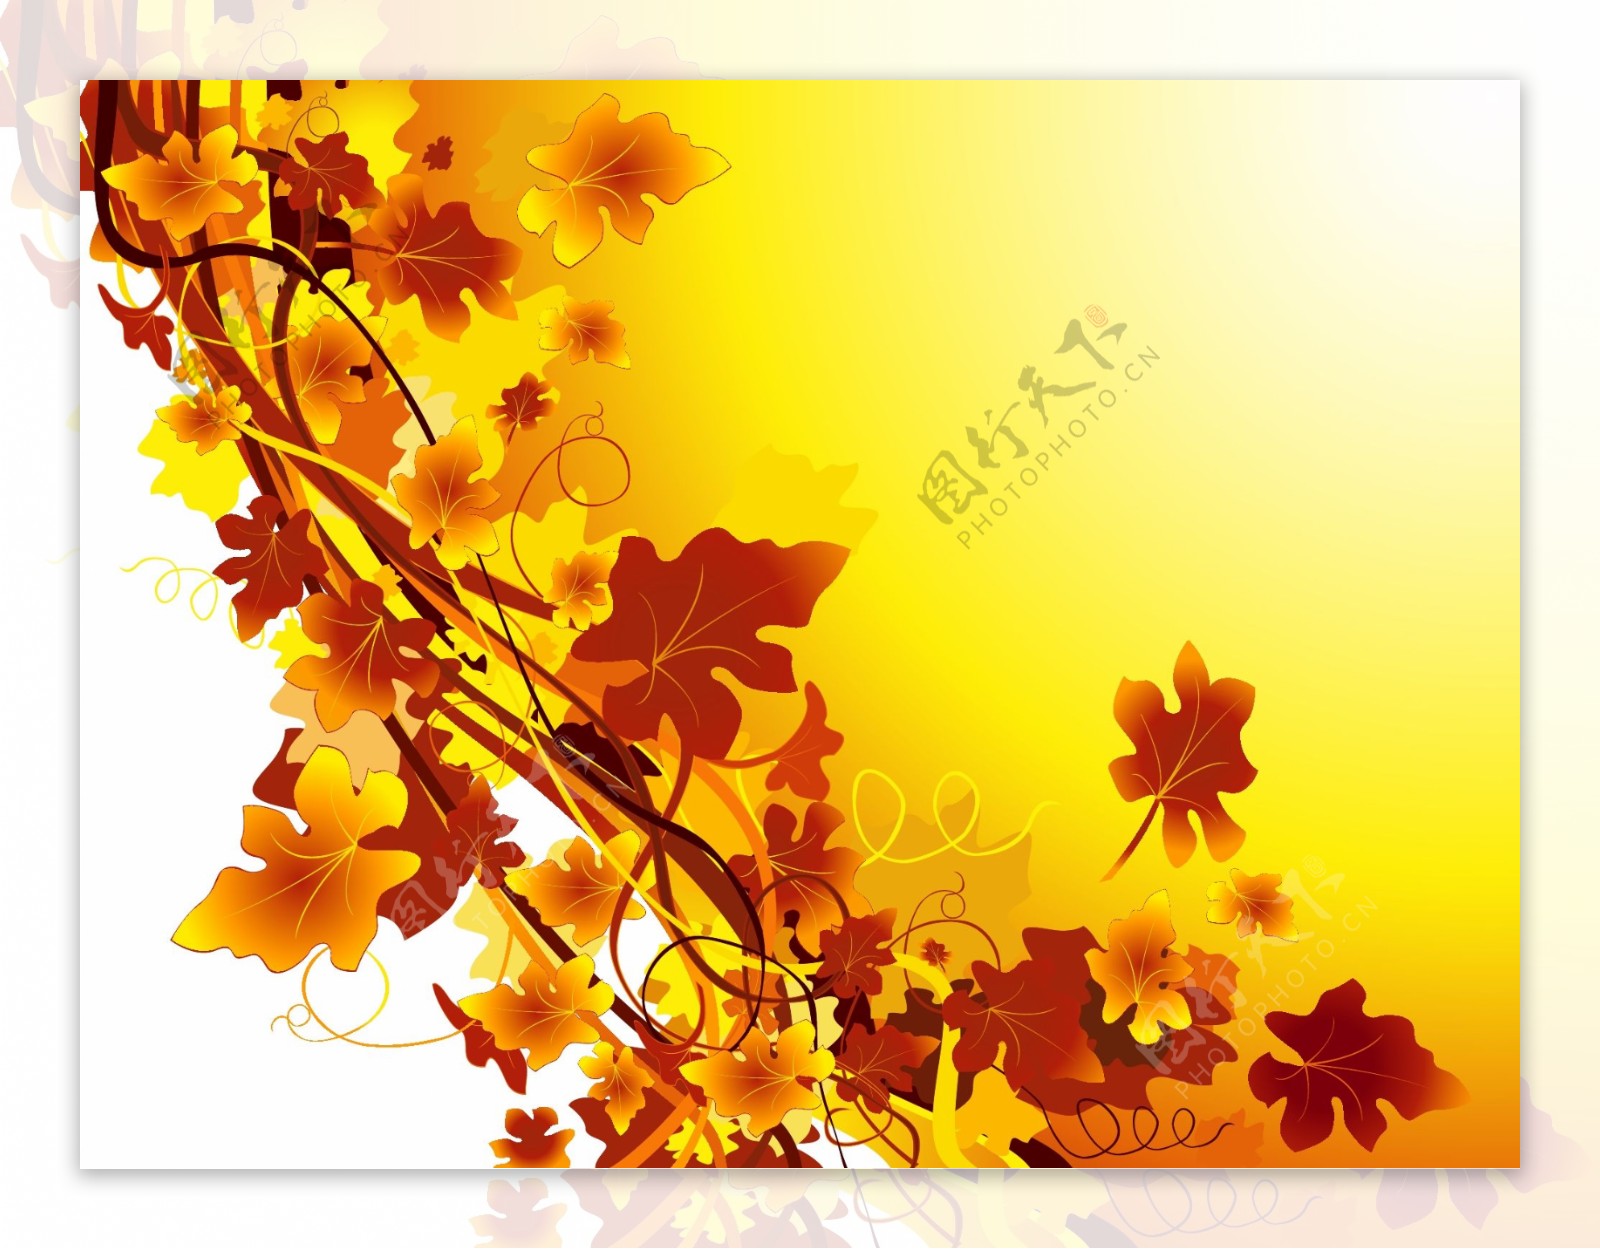 矢量花纹底纹背景秋天的叶子eps格式黄色叶子矢量素材秋天的花朵